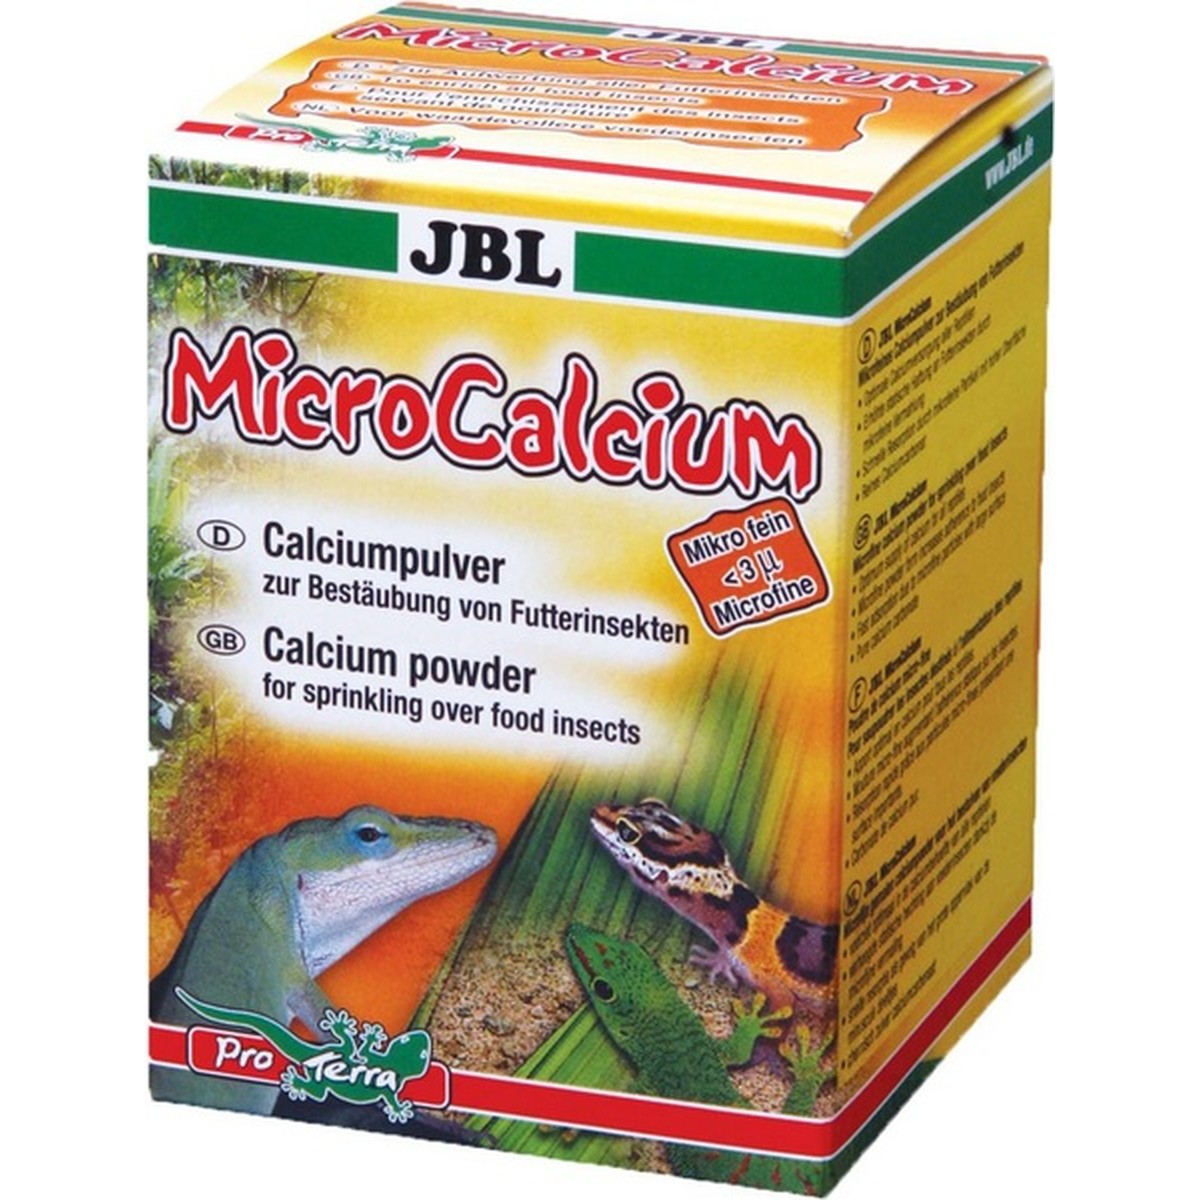   JBL MicroCalcium 100g D/GB/F/NL  100g